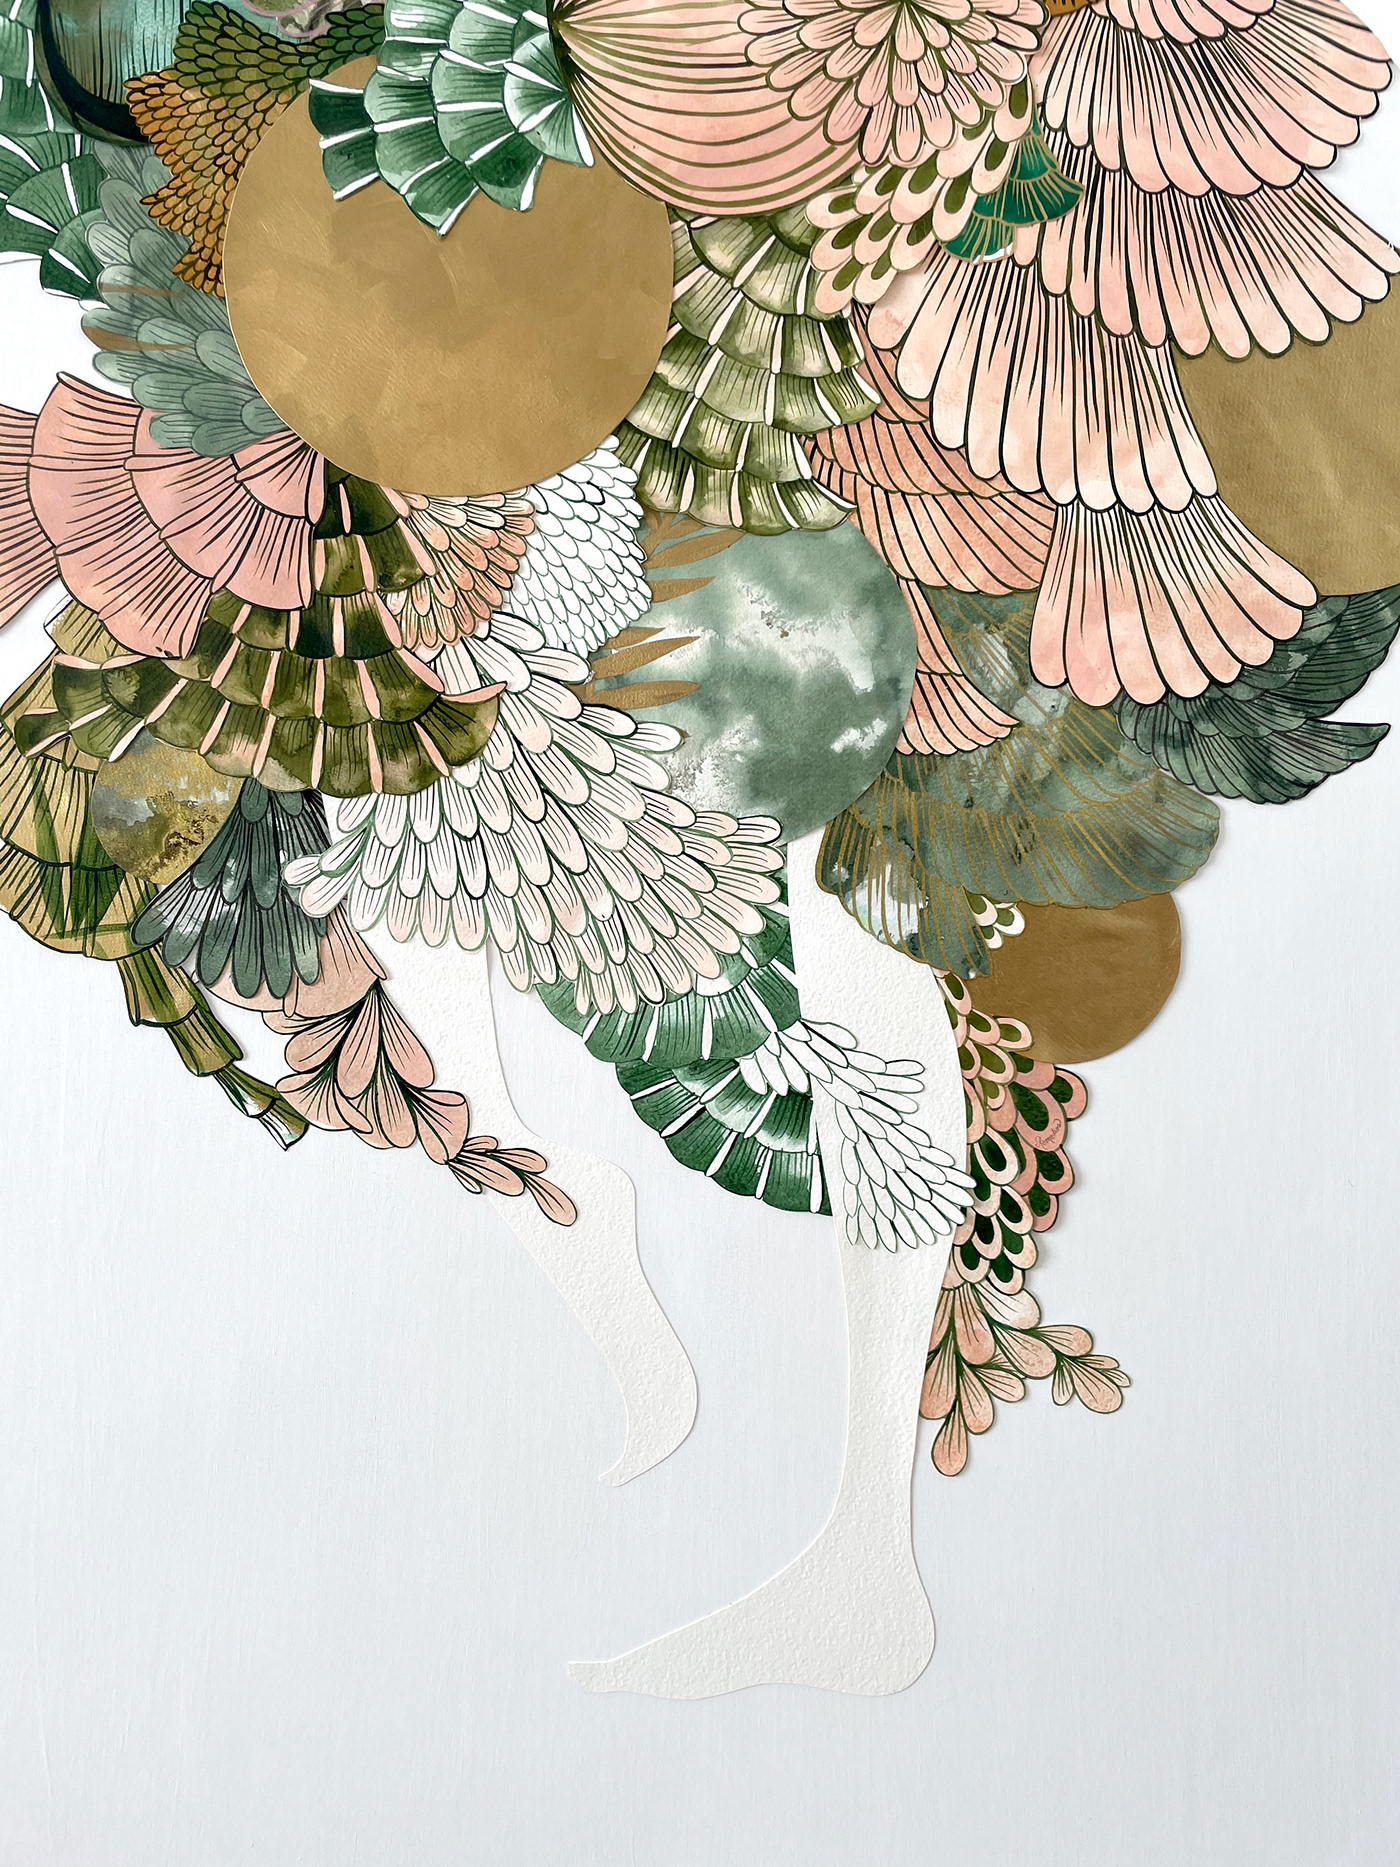 collage ensamblaje fragmentos papel papel cortado Paper cutting tijeras voragine  